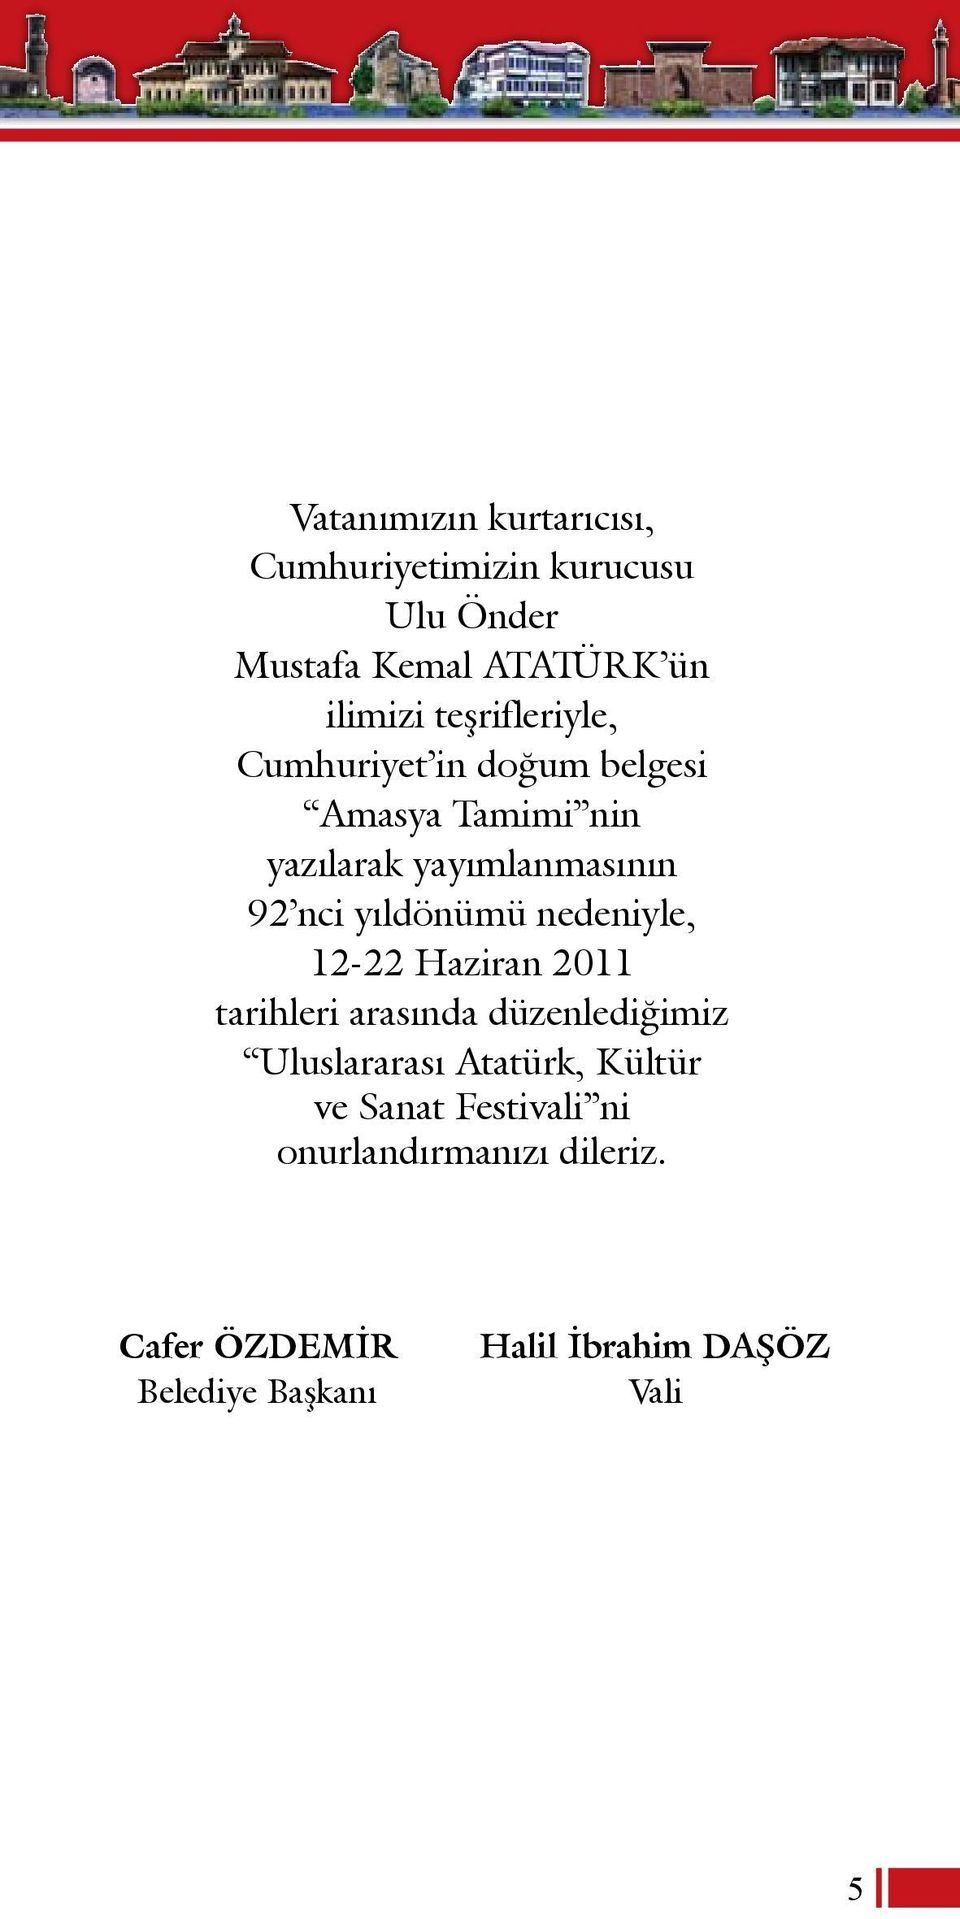 yıldönümü nedeniyle, 12-22 Haziran 2011 tarihleri arasında düzenlediğimiz Uluslararası Atatürk,